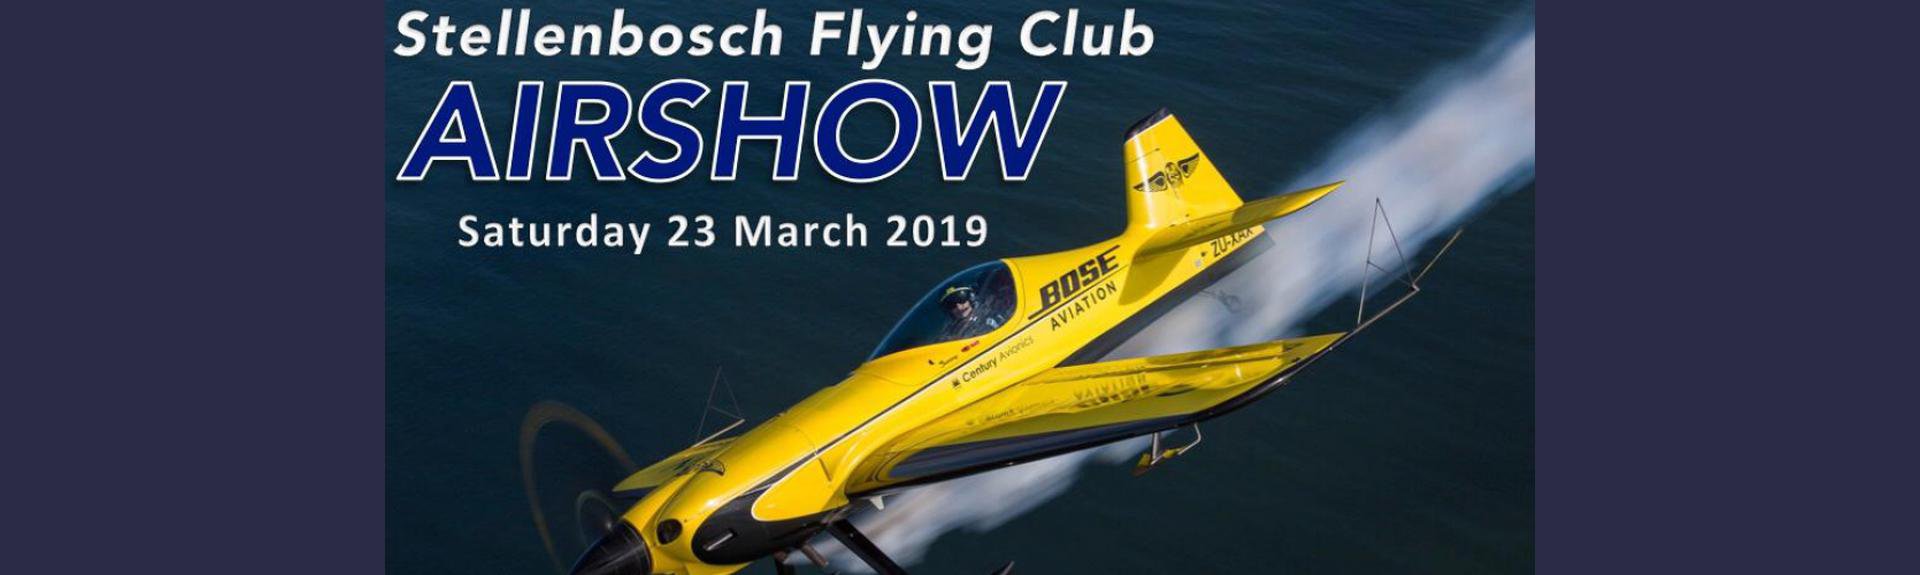 Airshow Stellenbosch Flying Club  